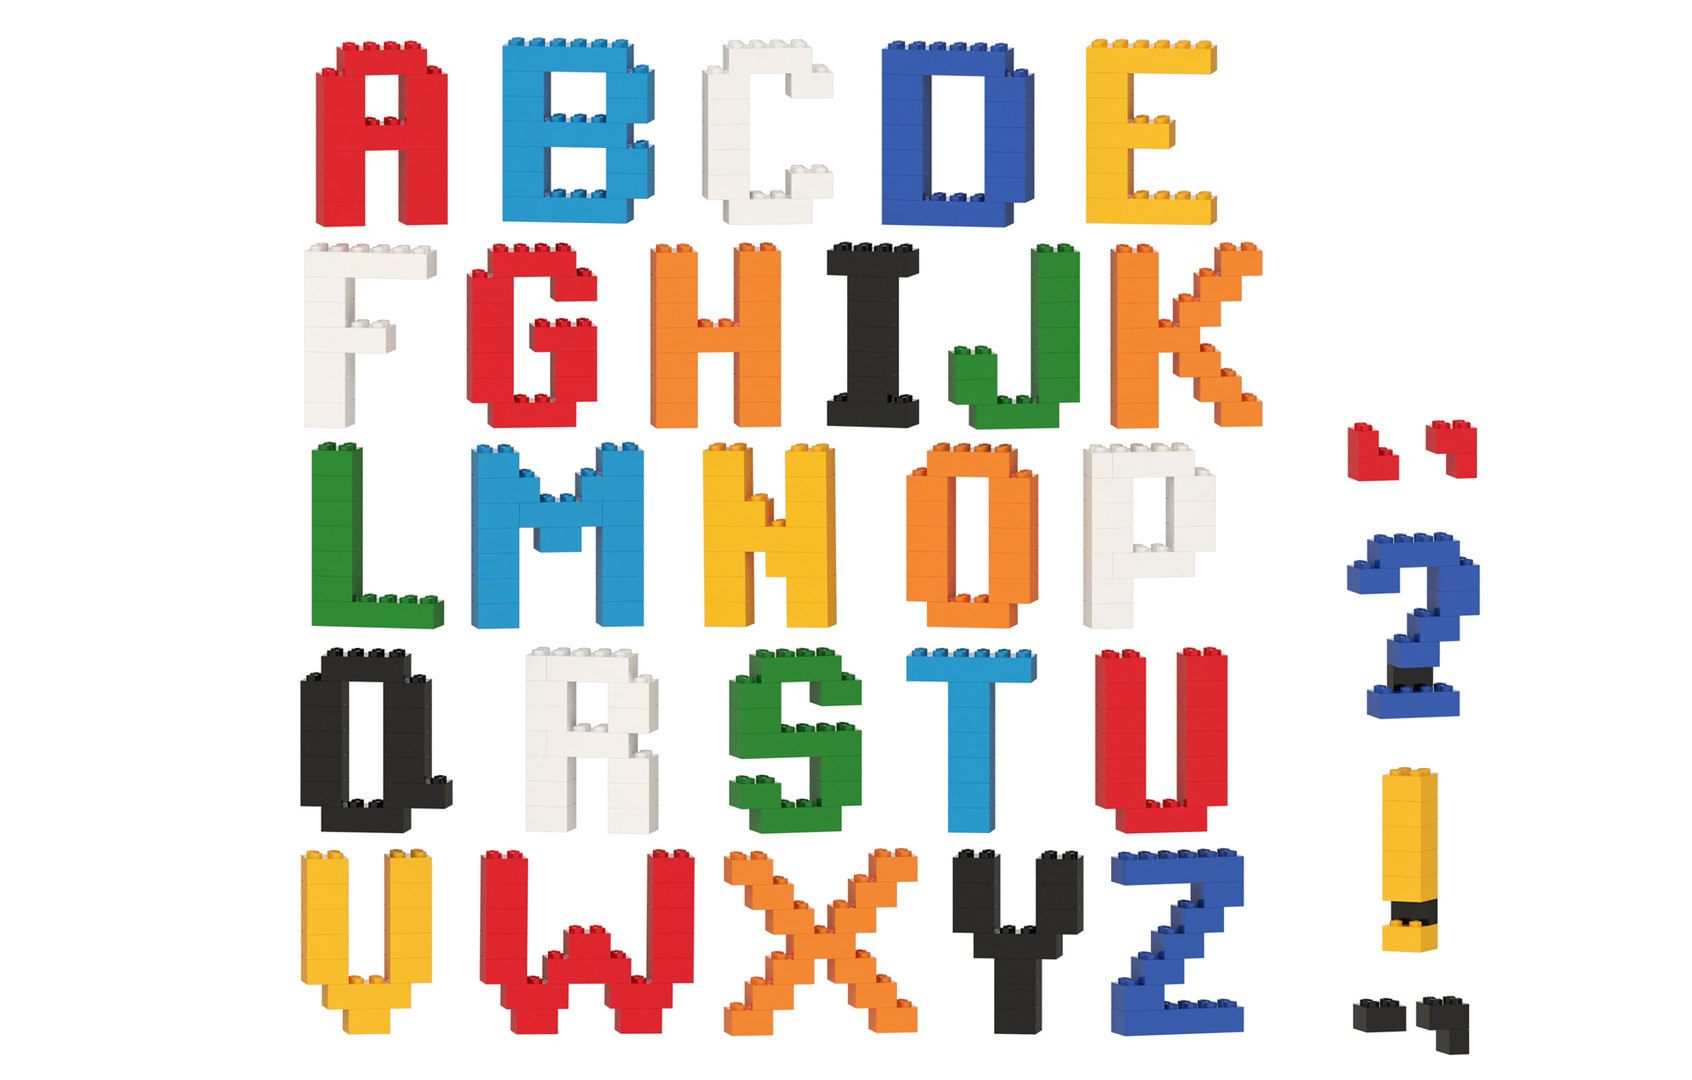 lego-brick-alphabet-3d-model-turbosquid-1552946